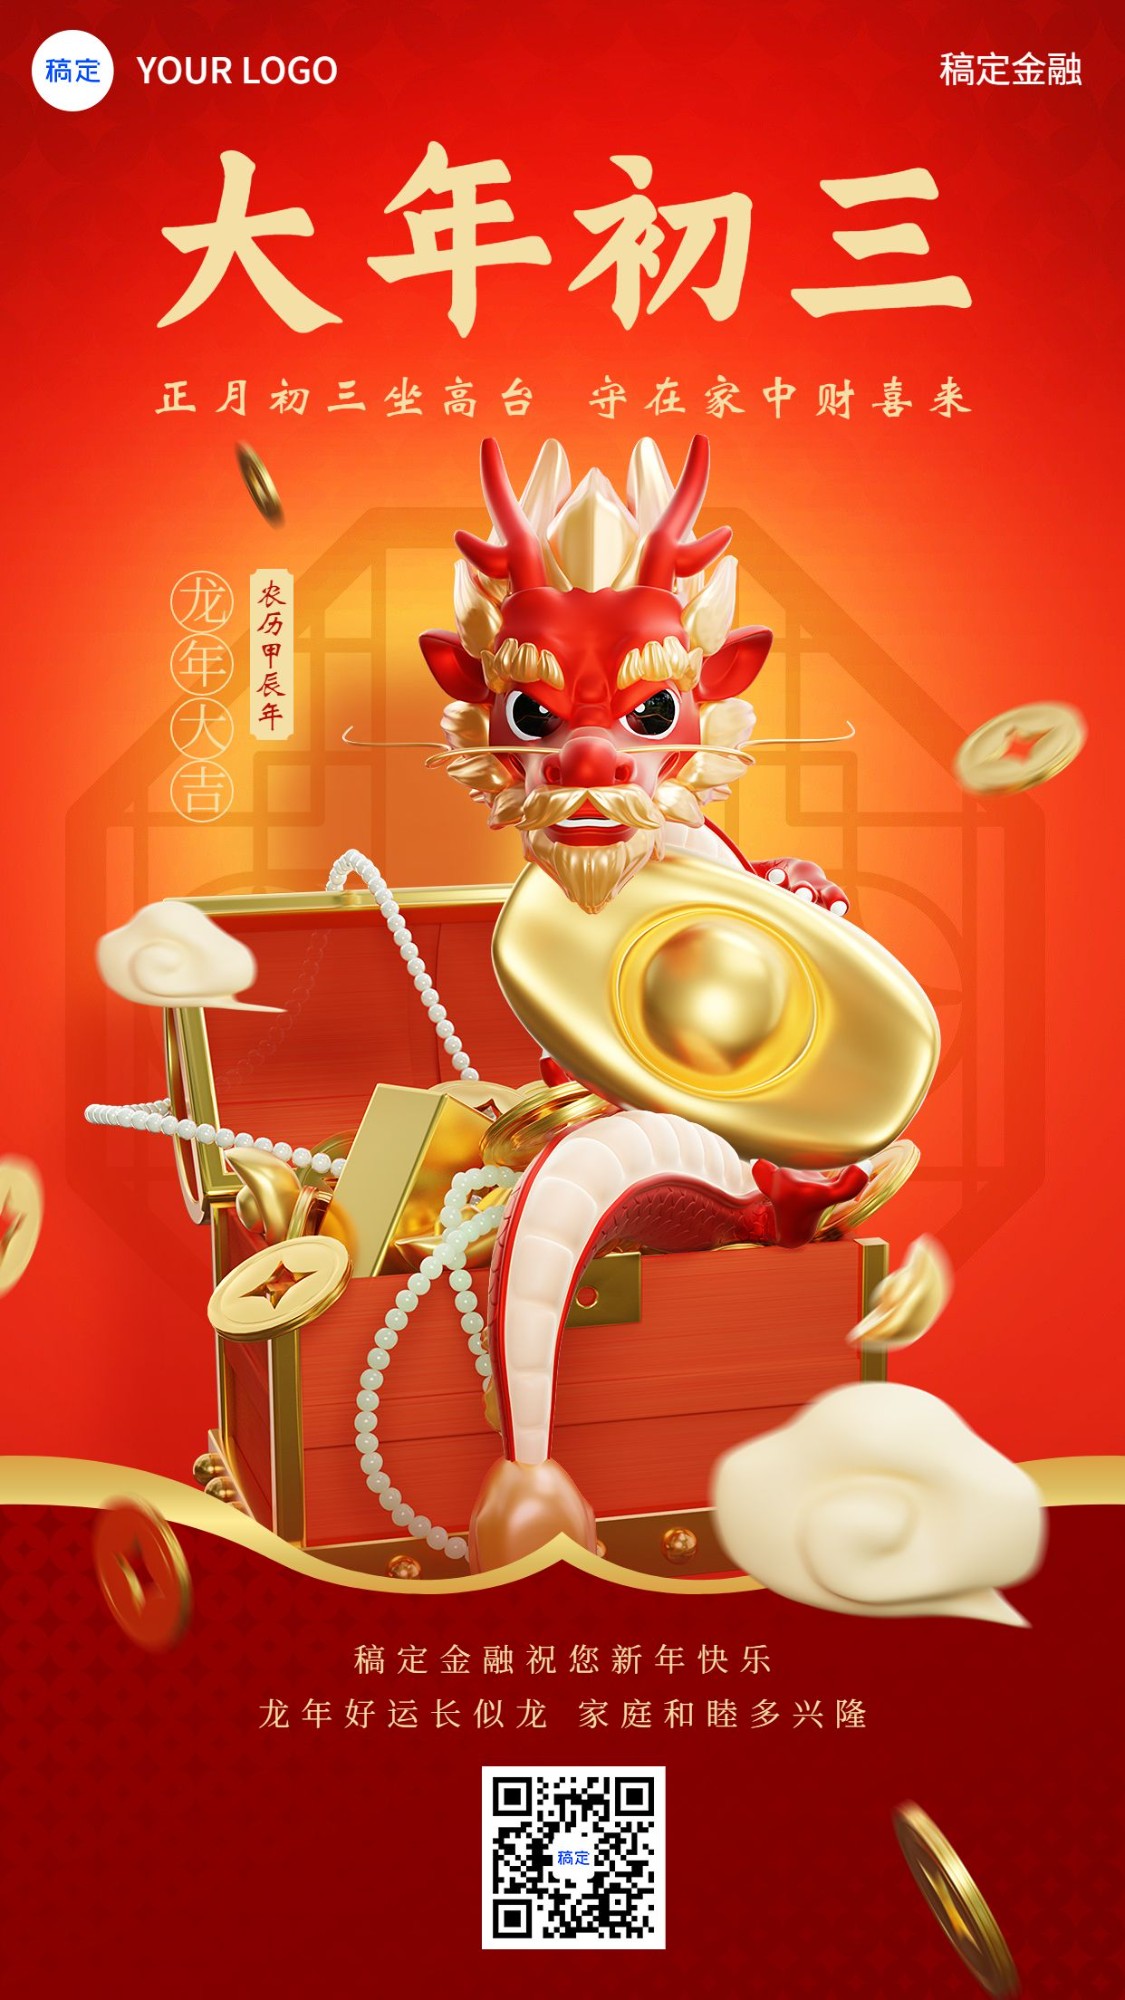 春节正月初三龙年金融保险节日祝福创意3D喜庆手机海报套系预览效果